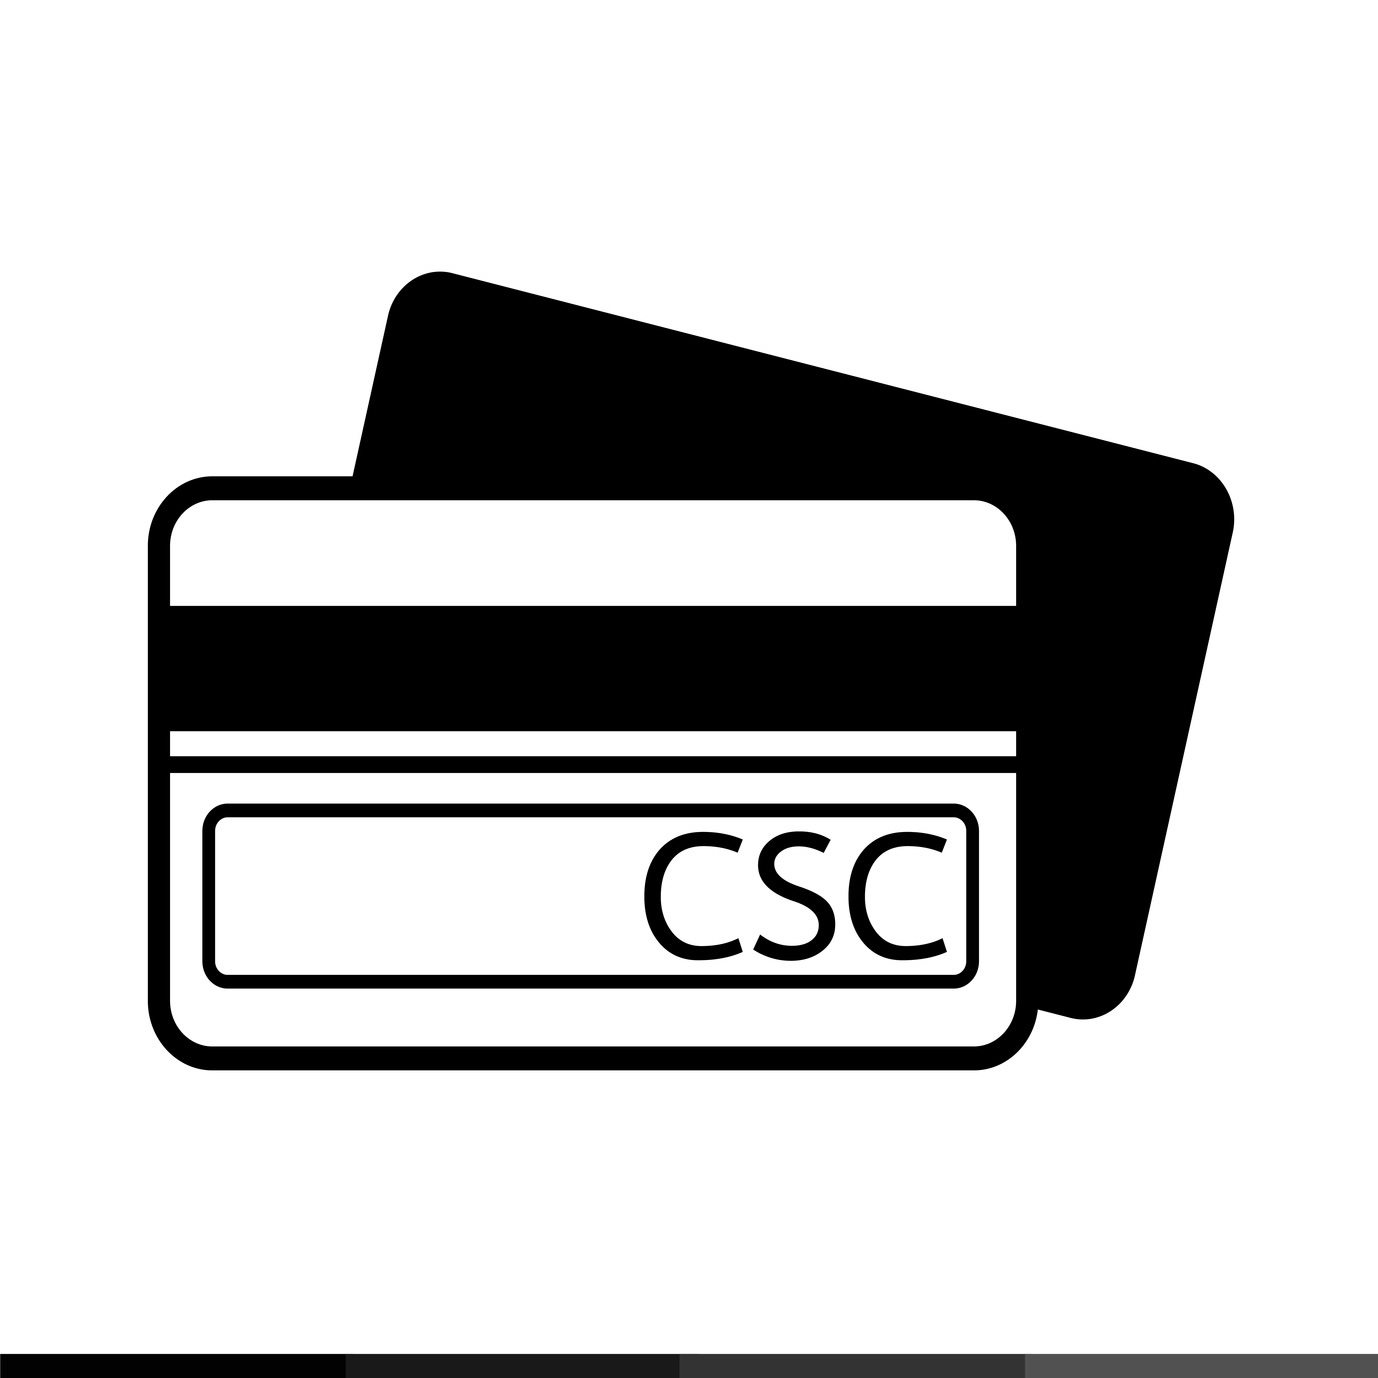 کارڈ CSC - تعریف، تصور اور یہ کیا ہے۔